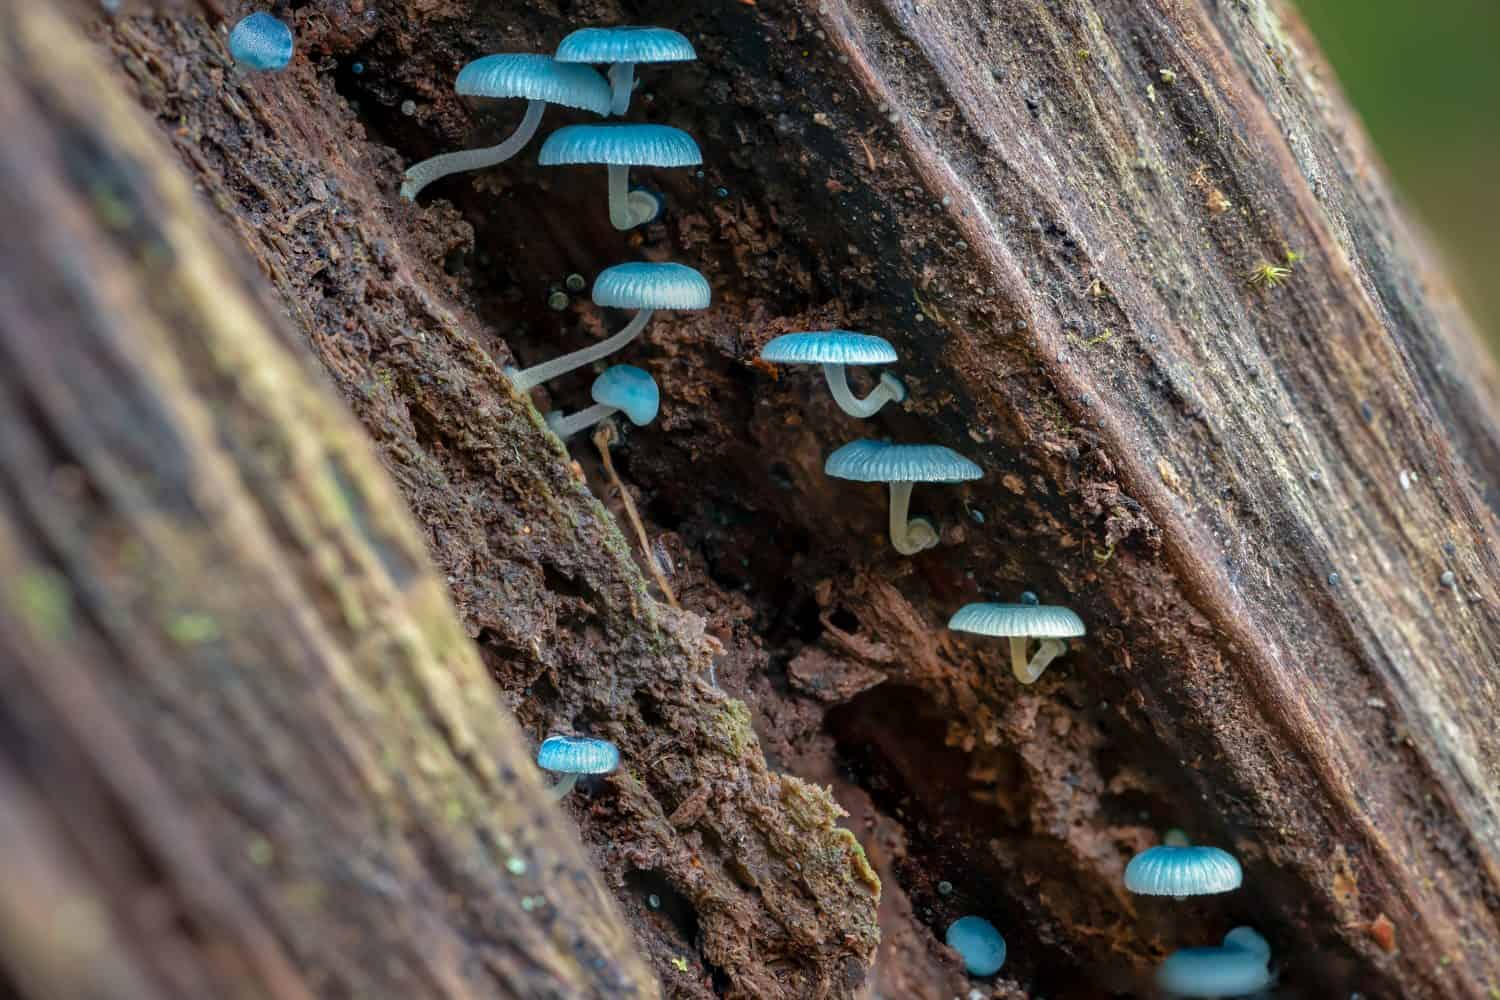 Blue fungi of Mycena interrupta or Pixie's Parasol mushrooms